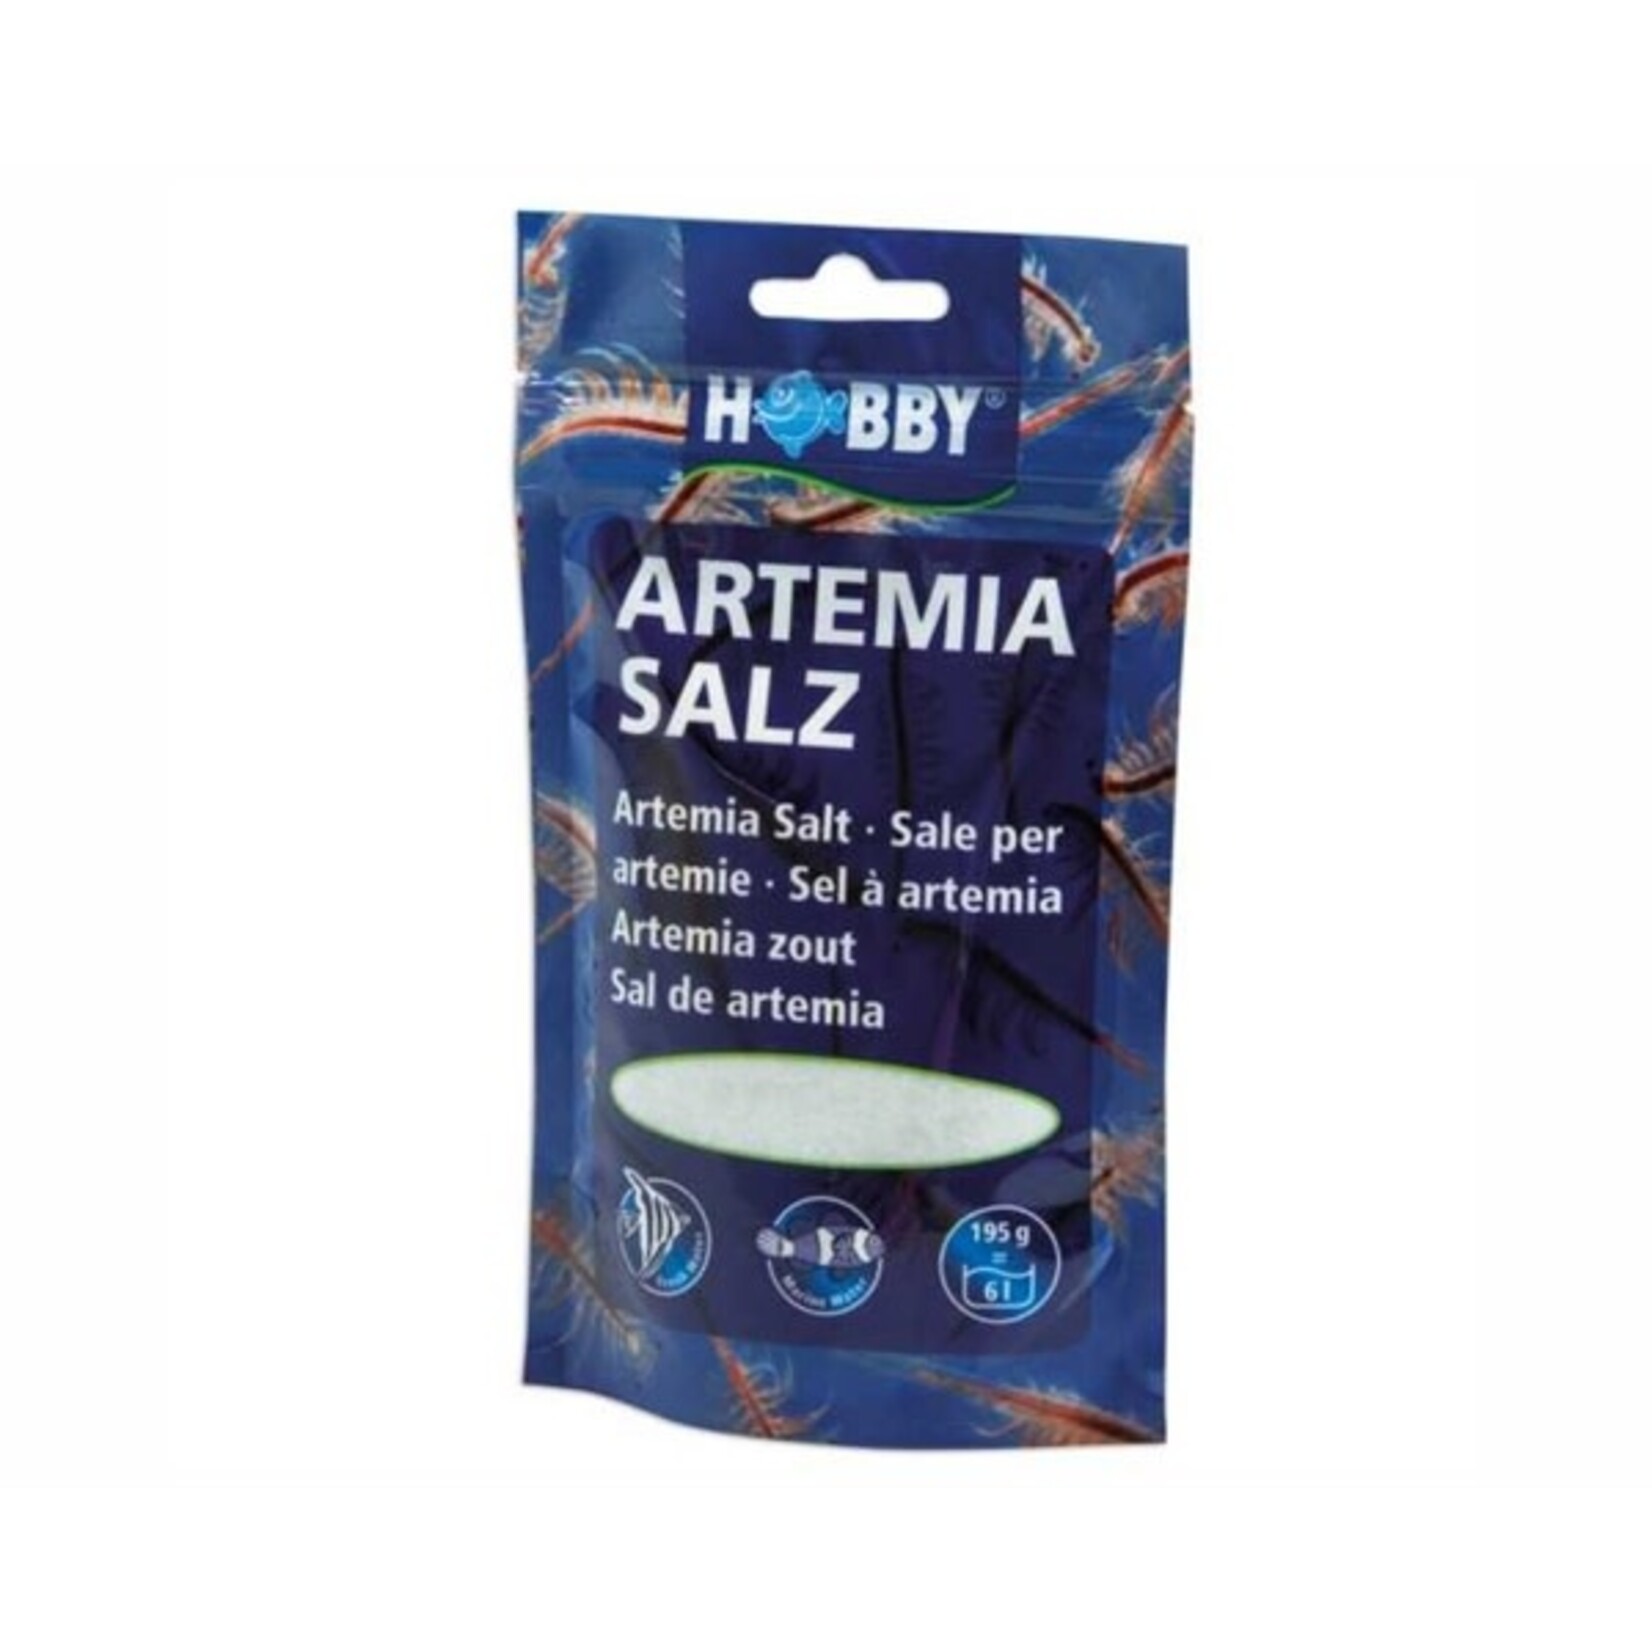 Hobby Artemia salt 195 g for 6 l